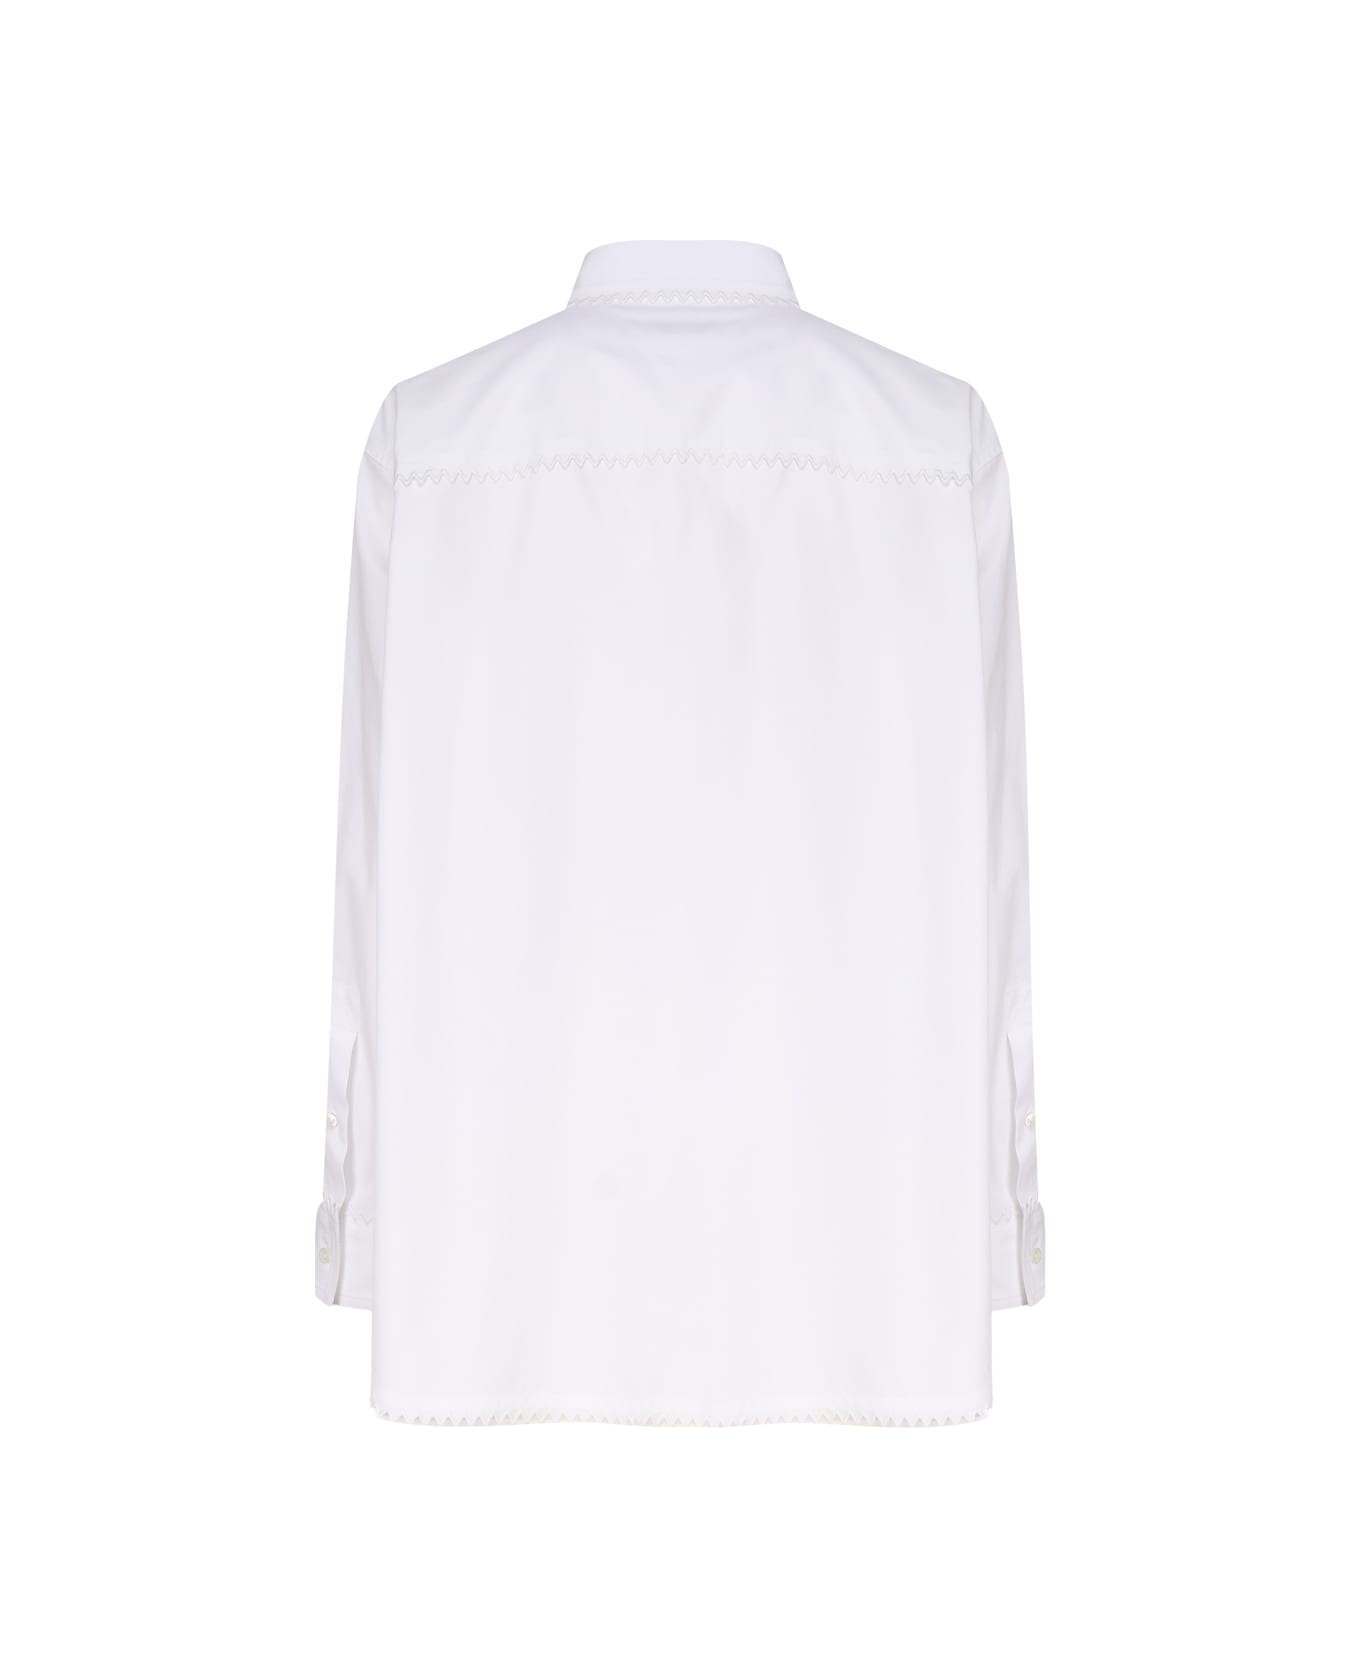 Bottega Veneta Oxford Shirt - White シャツ